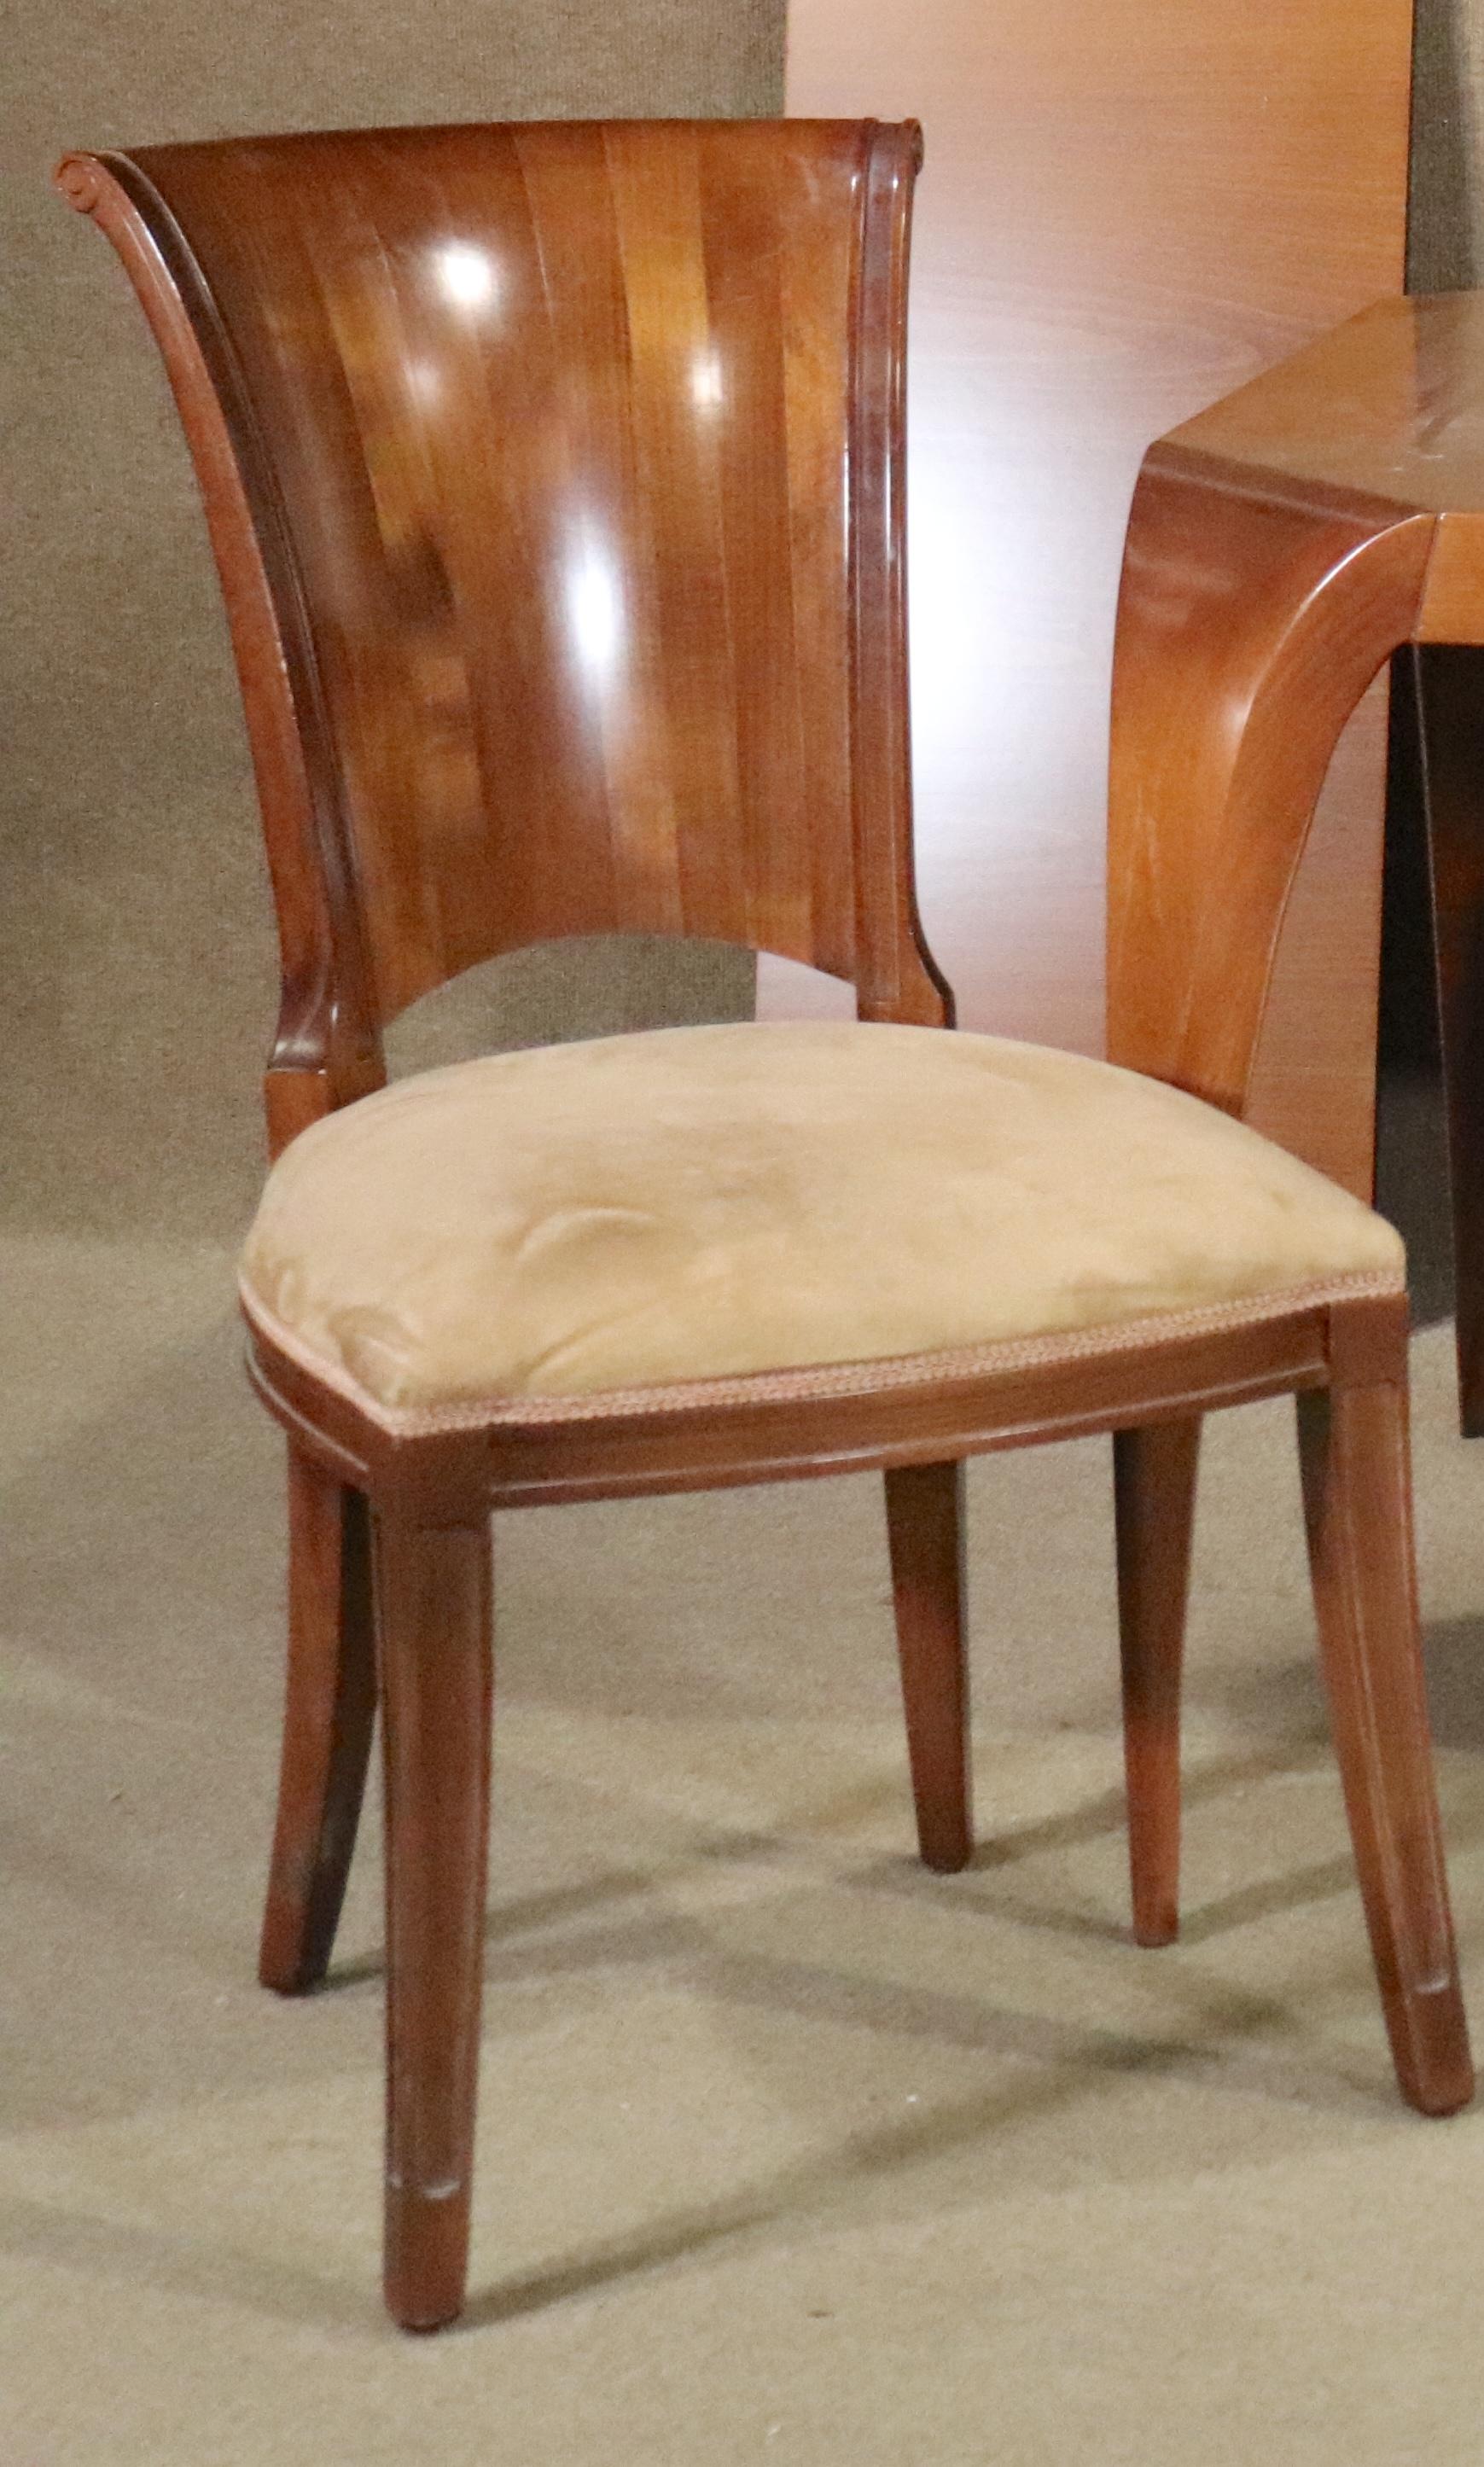 Ensemble de quatre chaises de salle à manger de style Art Déco. Dossiers simples en bois sculpté et sièges à coussin épais.
Veuillez confirmer le lieu NY ou NJ